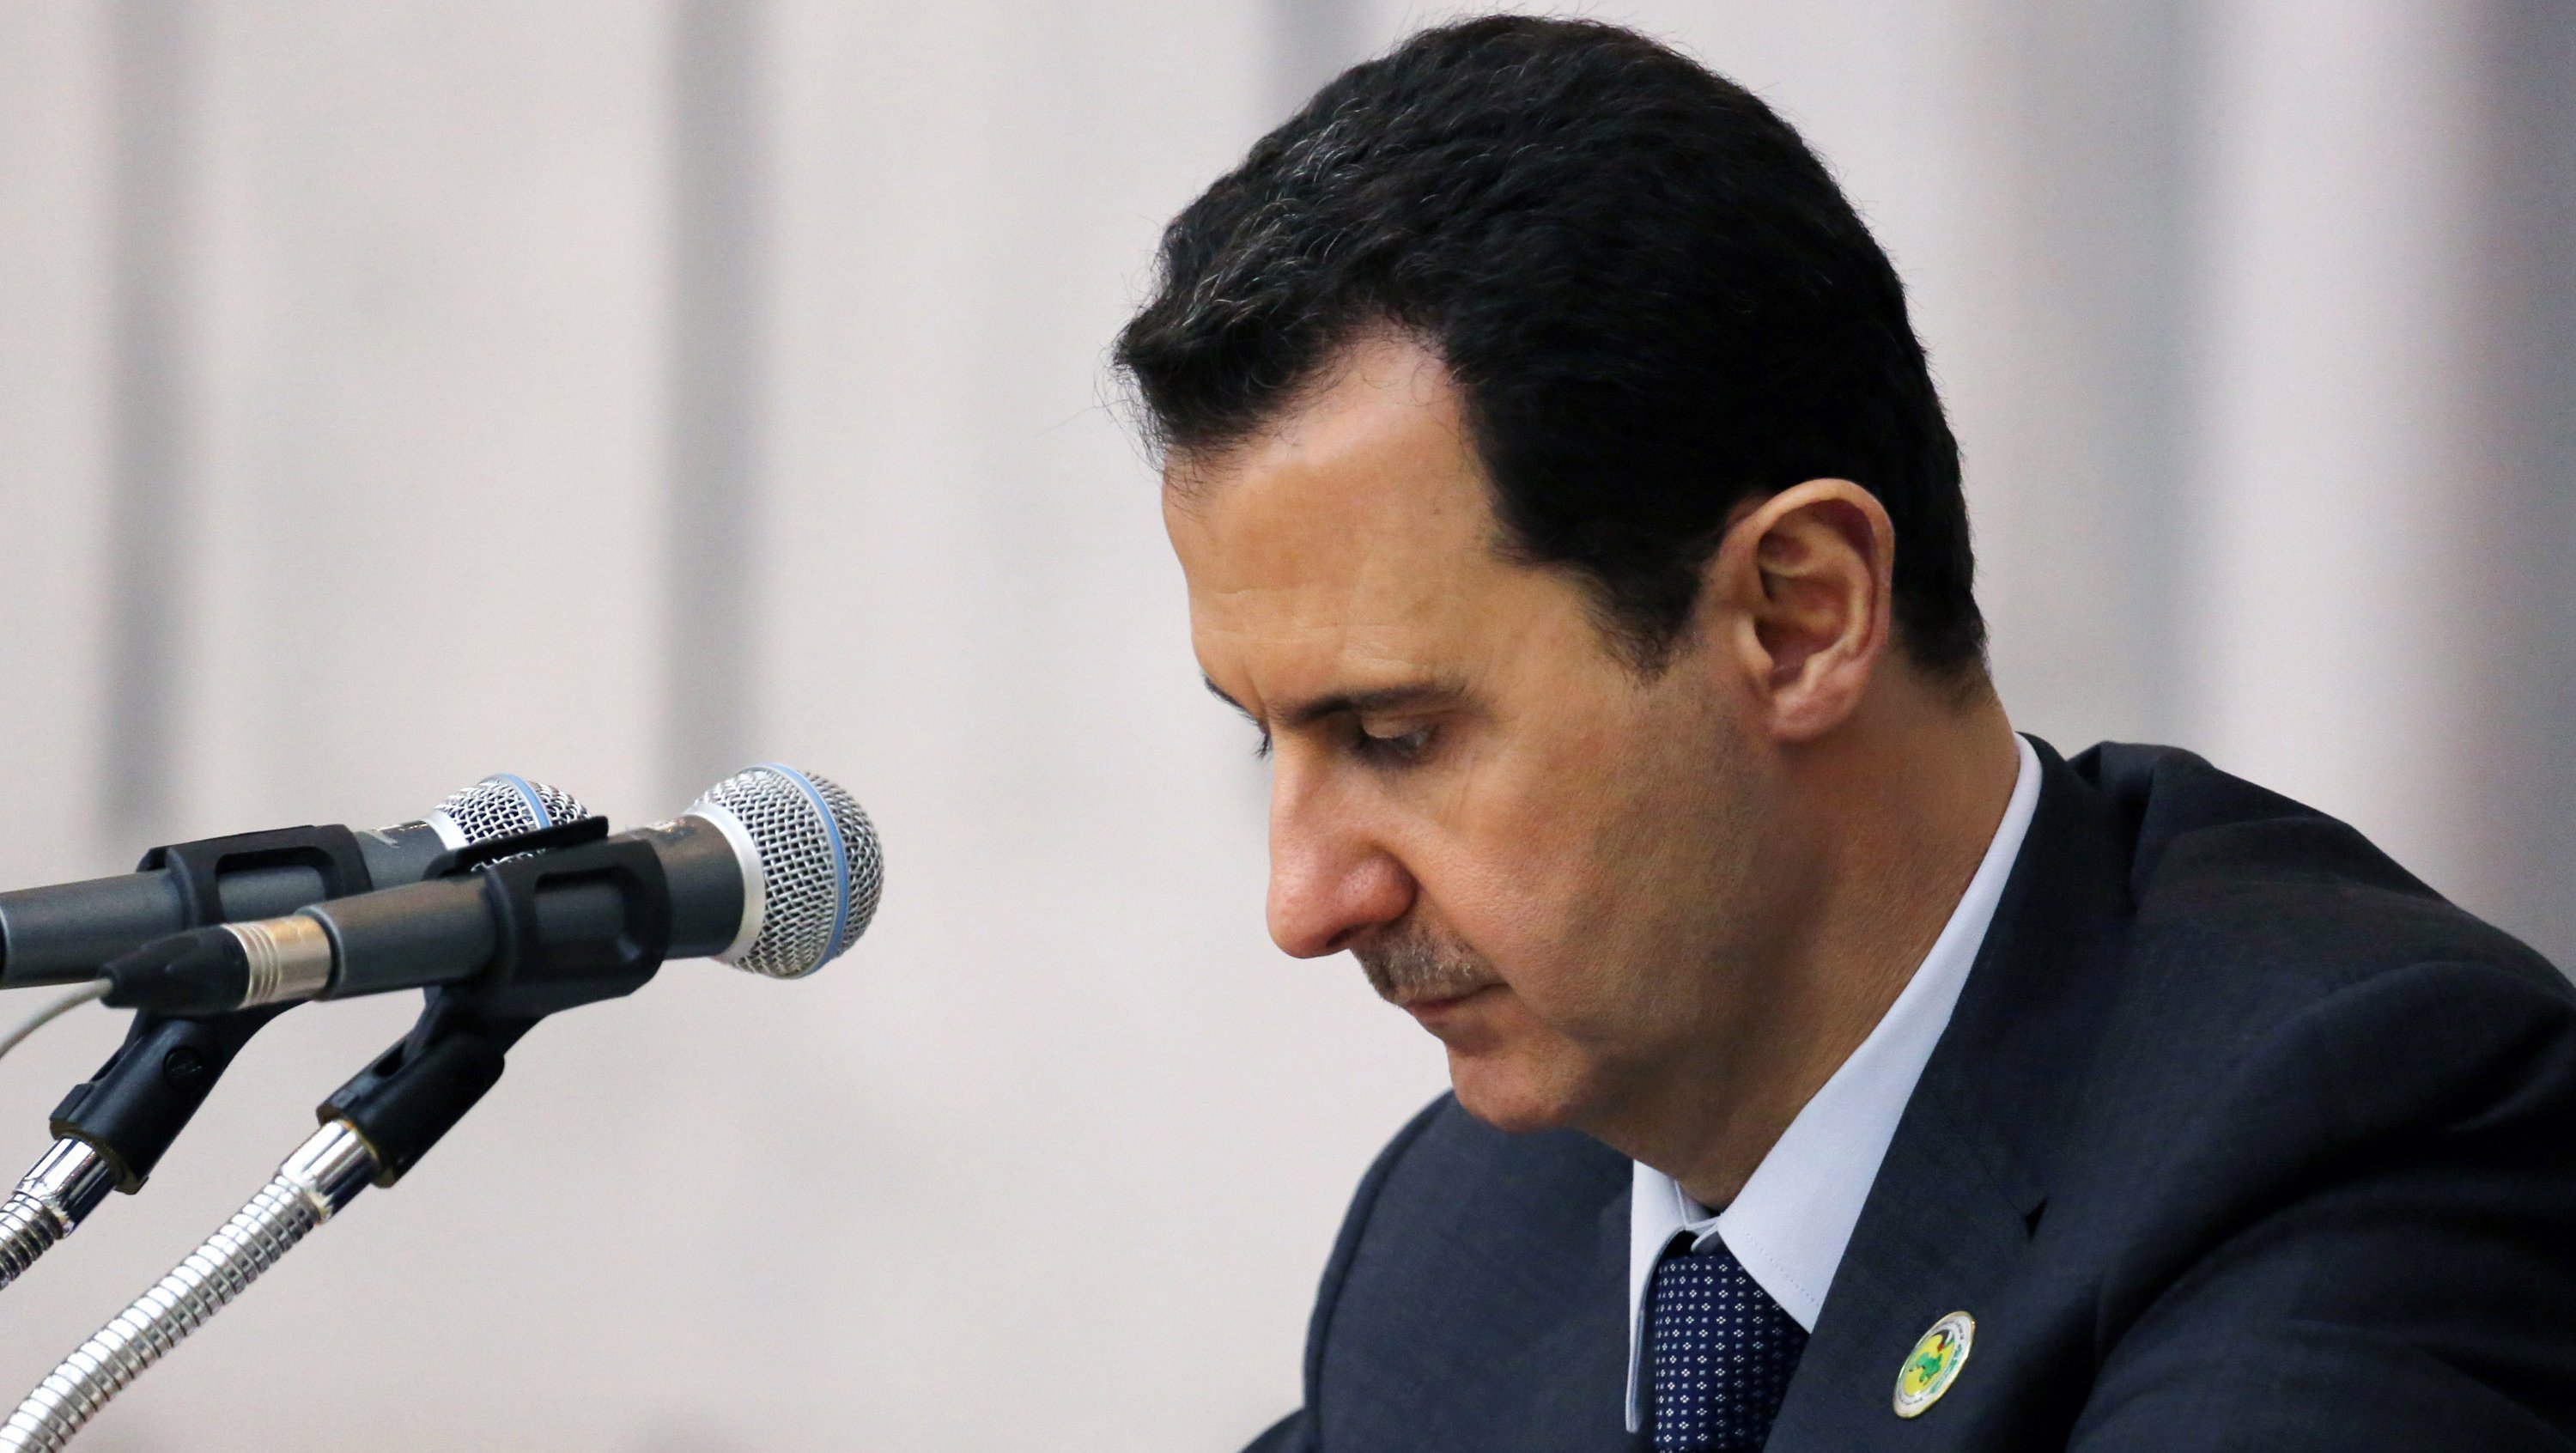  الغارديان: واشنطن لم تعد تطالب بسقوط الاسد في سوريا